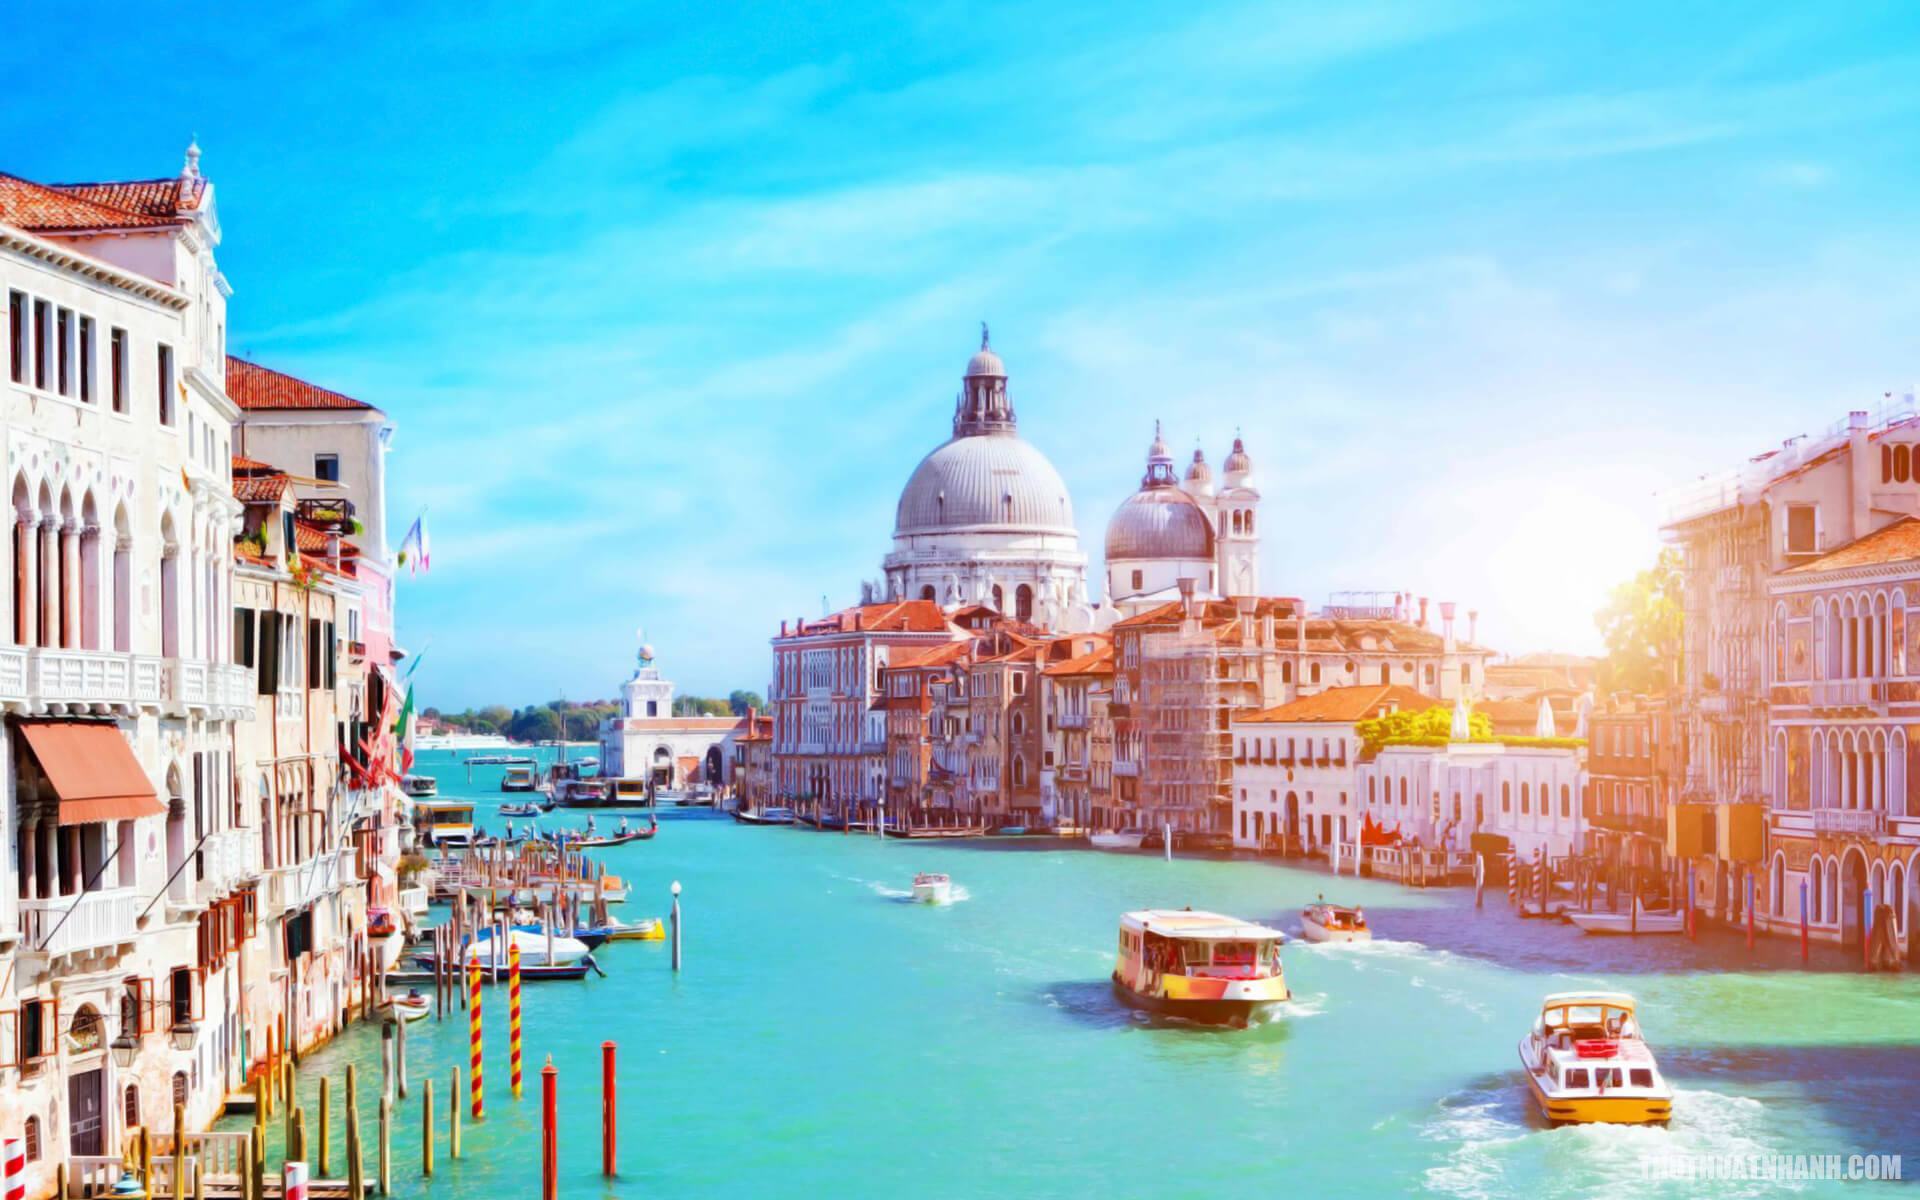 Hình ảnh thành phố tuyệt đẹp dưới ánh mặt trời ở Venice